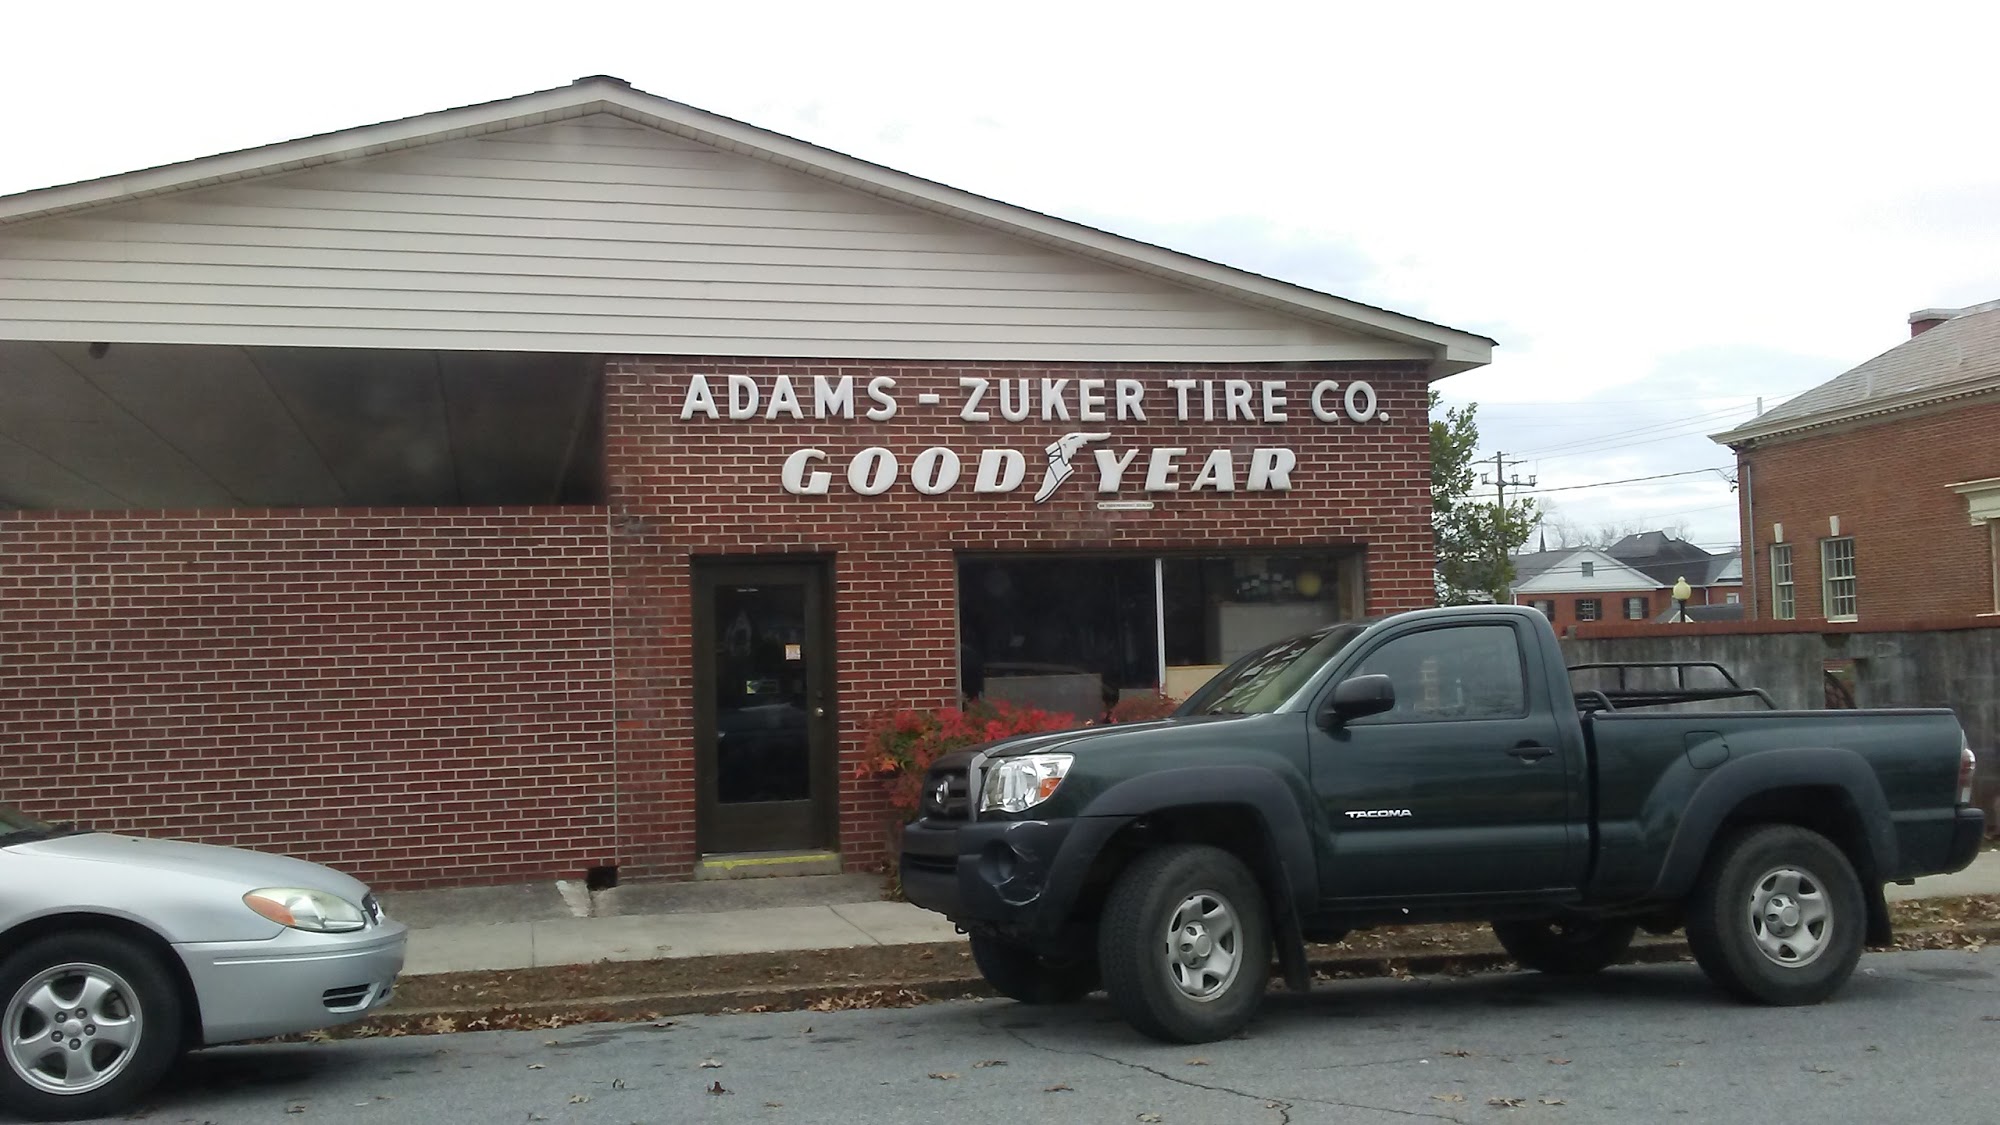 Adams & Zuker Tire Co